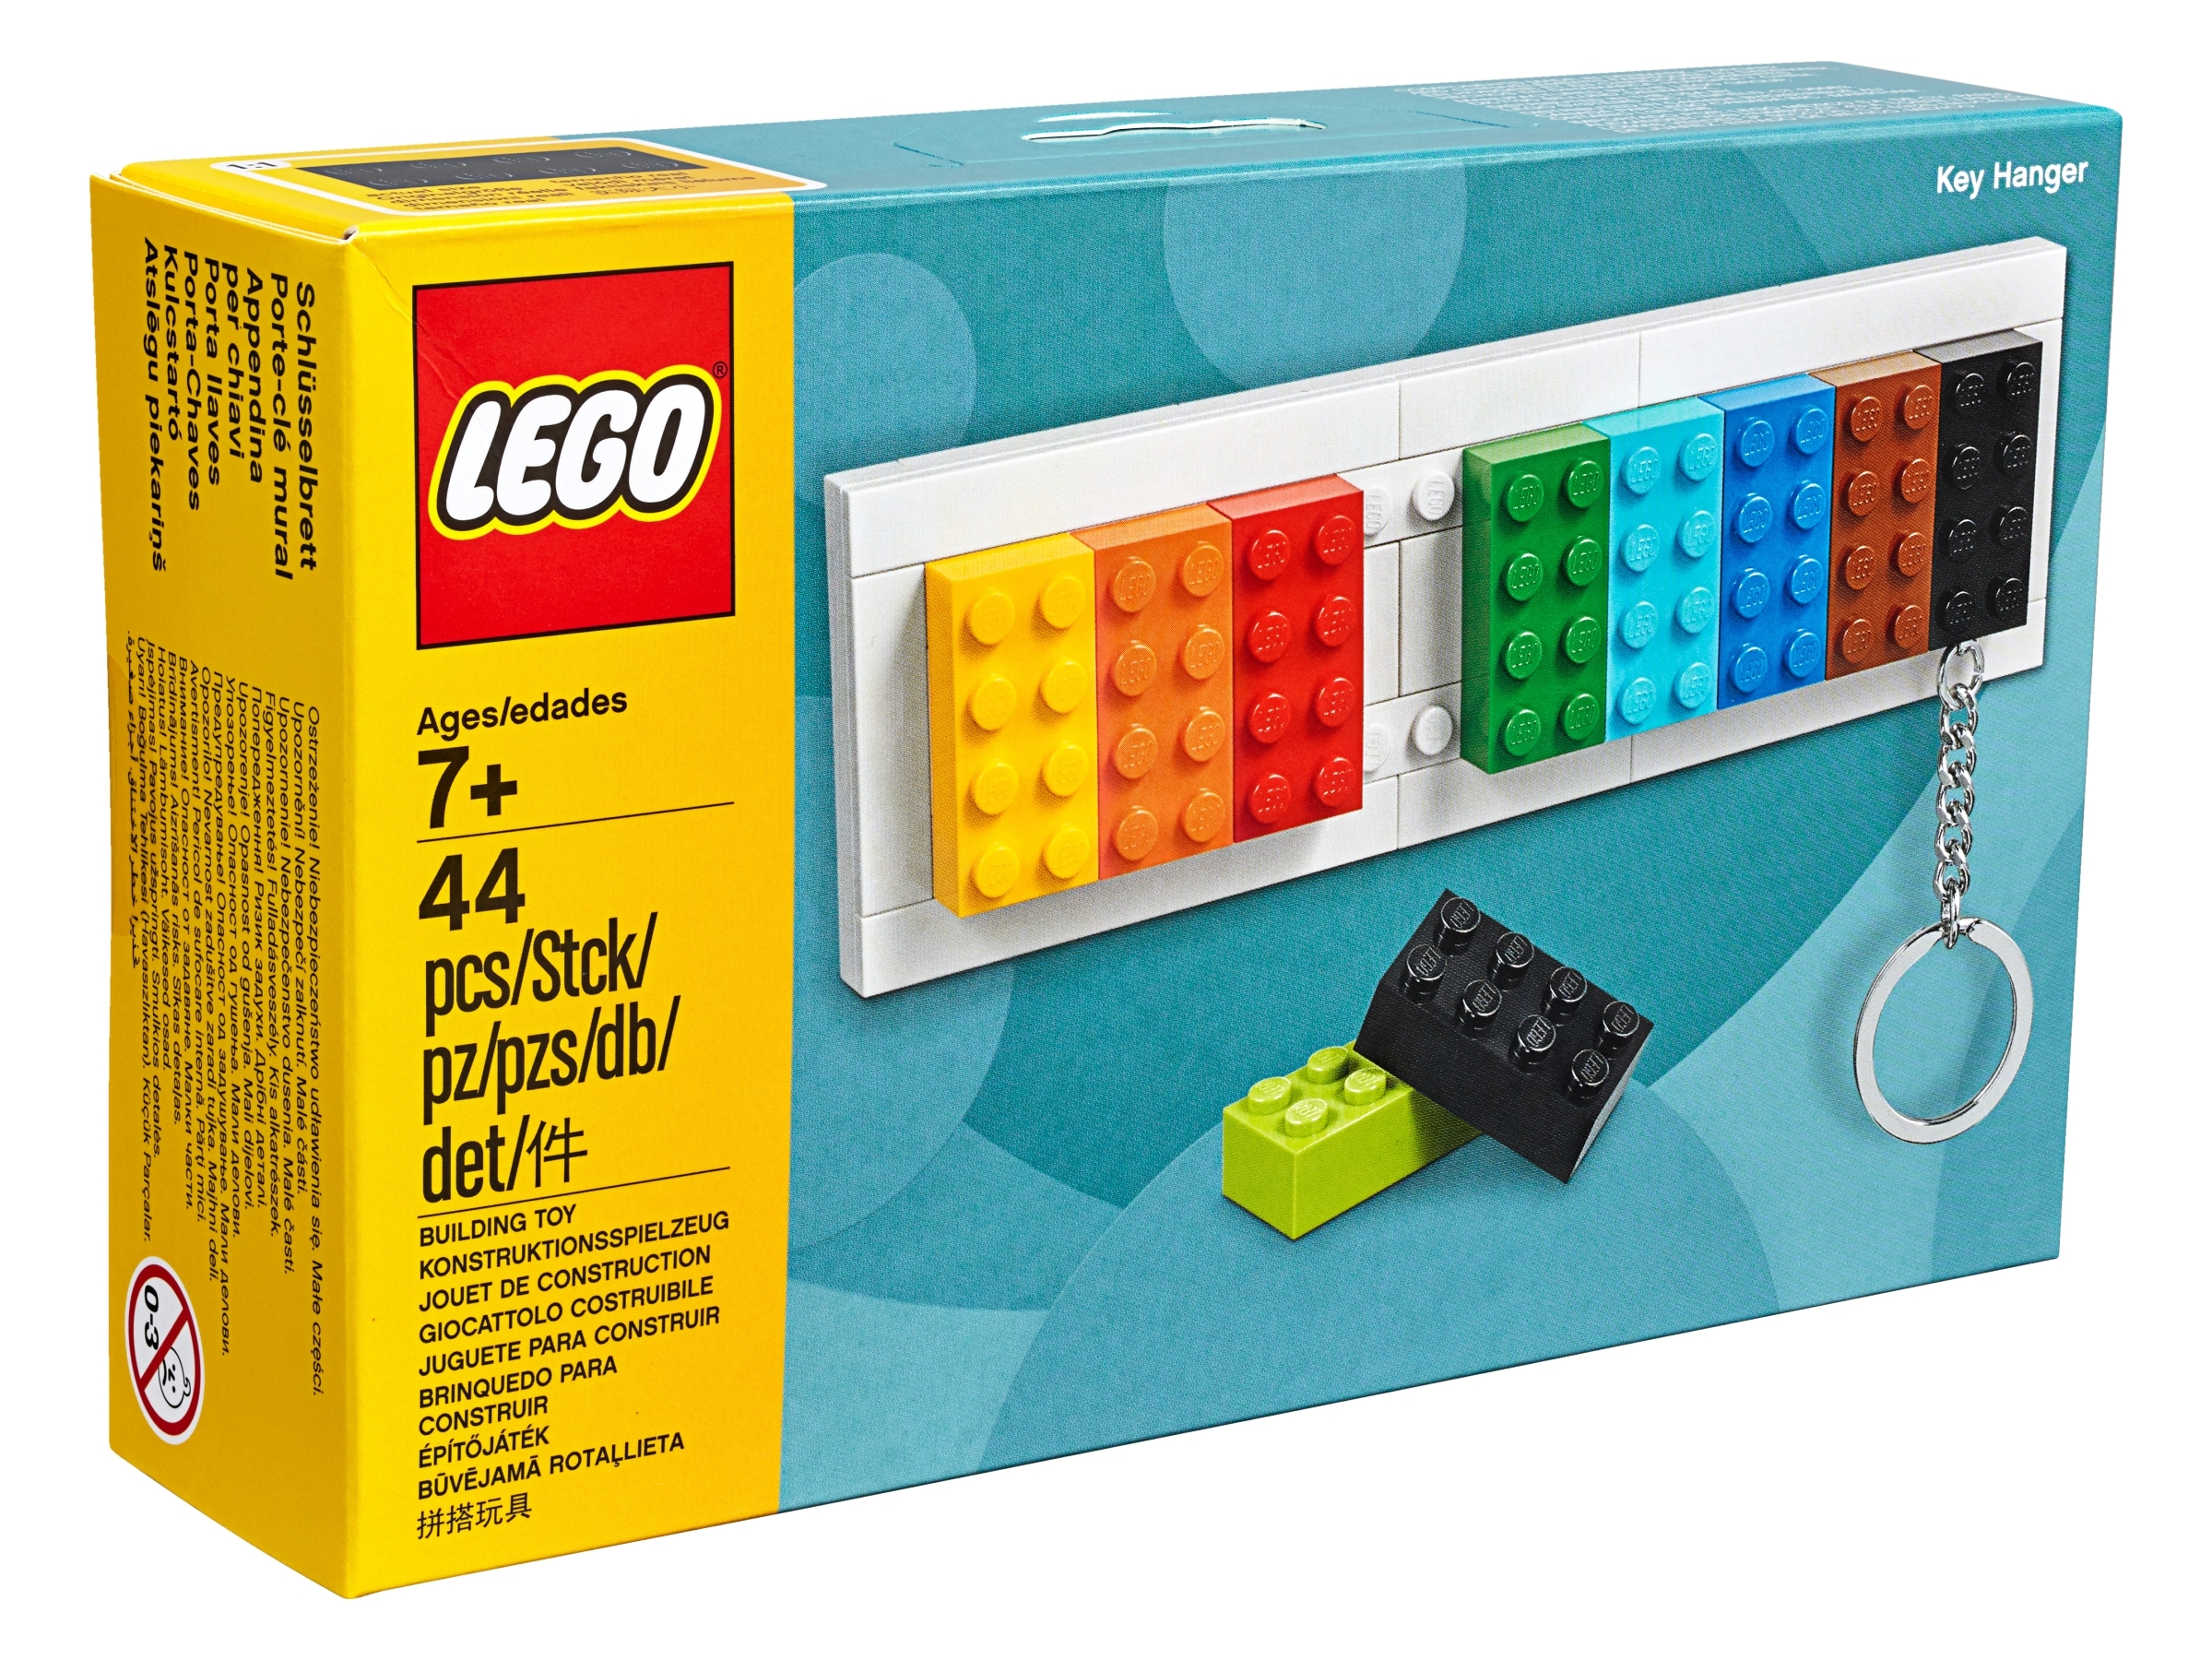 Llaveros LEGO®, ¡Renueva tu set de llaves a uno completamente diferente! ✨  Están de vuelta el portallaves y los llaveros LEGO® de tus personajes  favoritos. Muéstralos a, By LEGO Store Perú